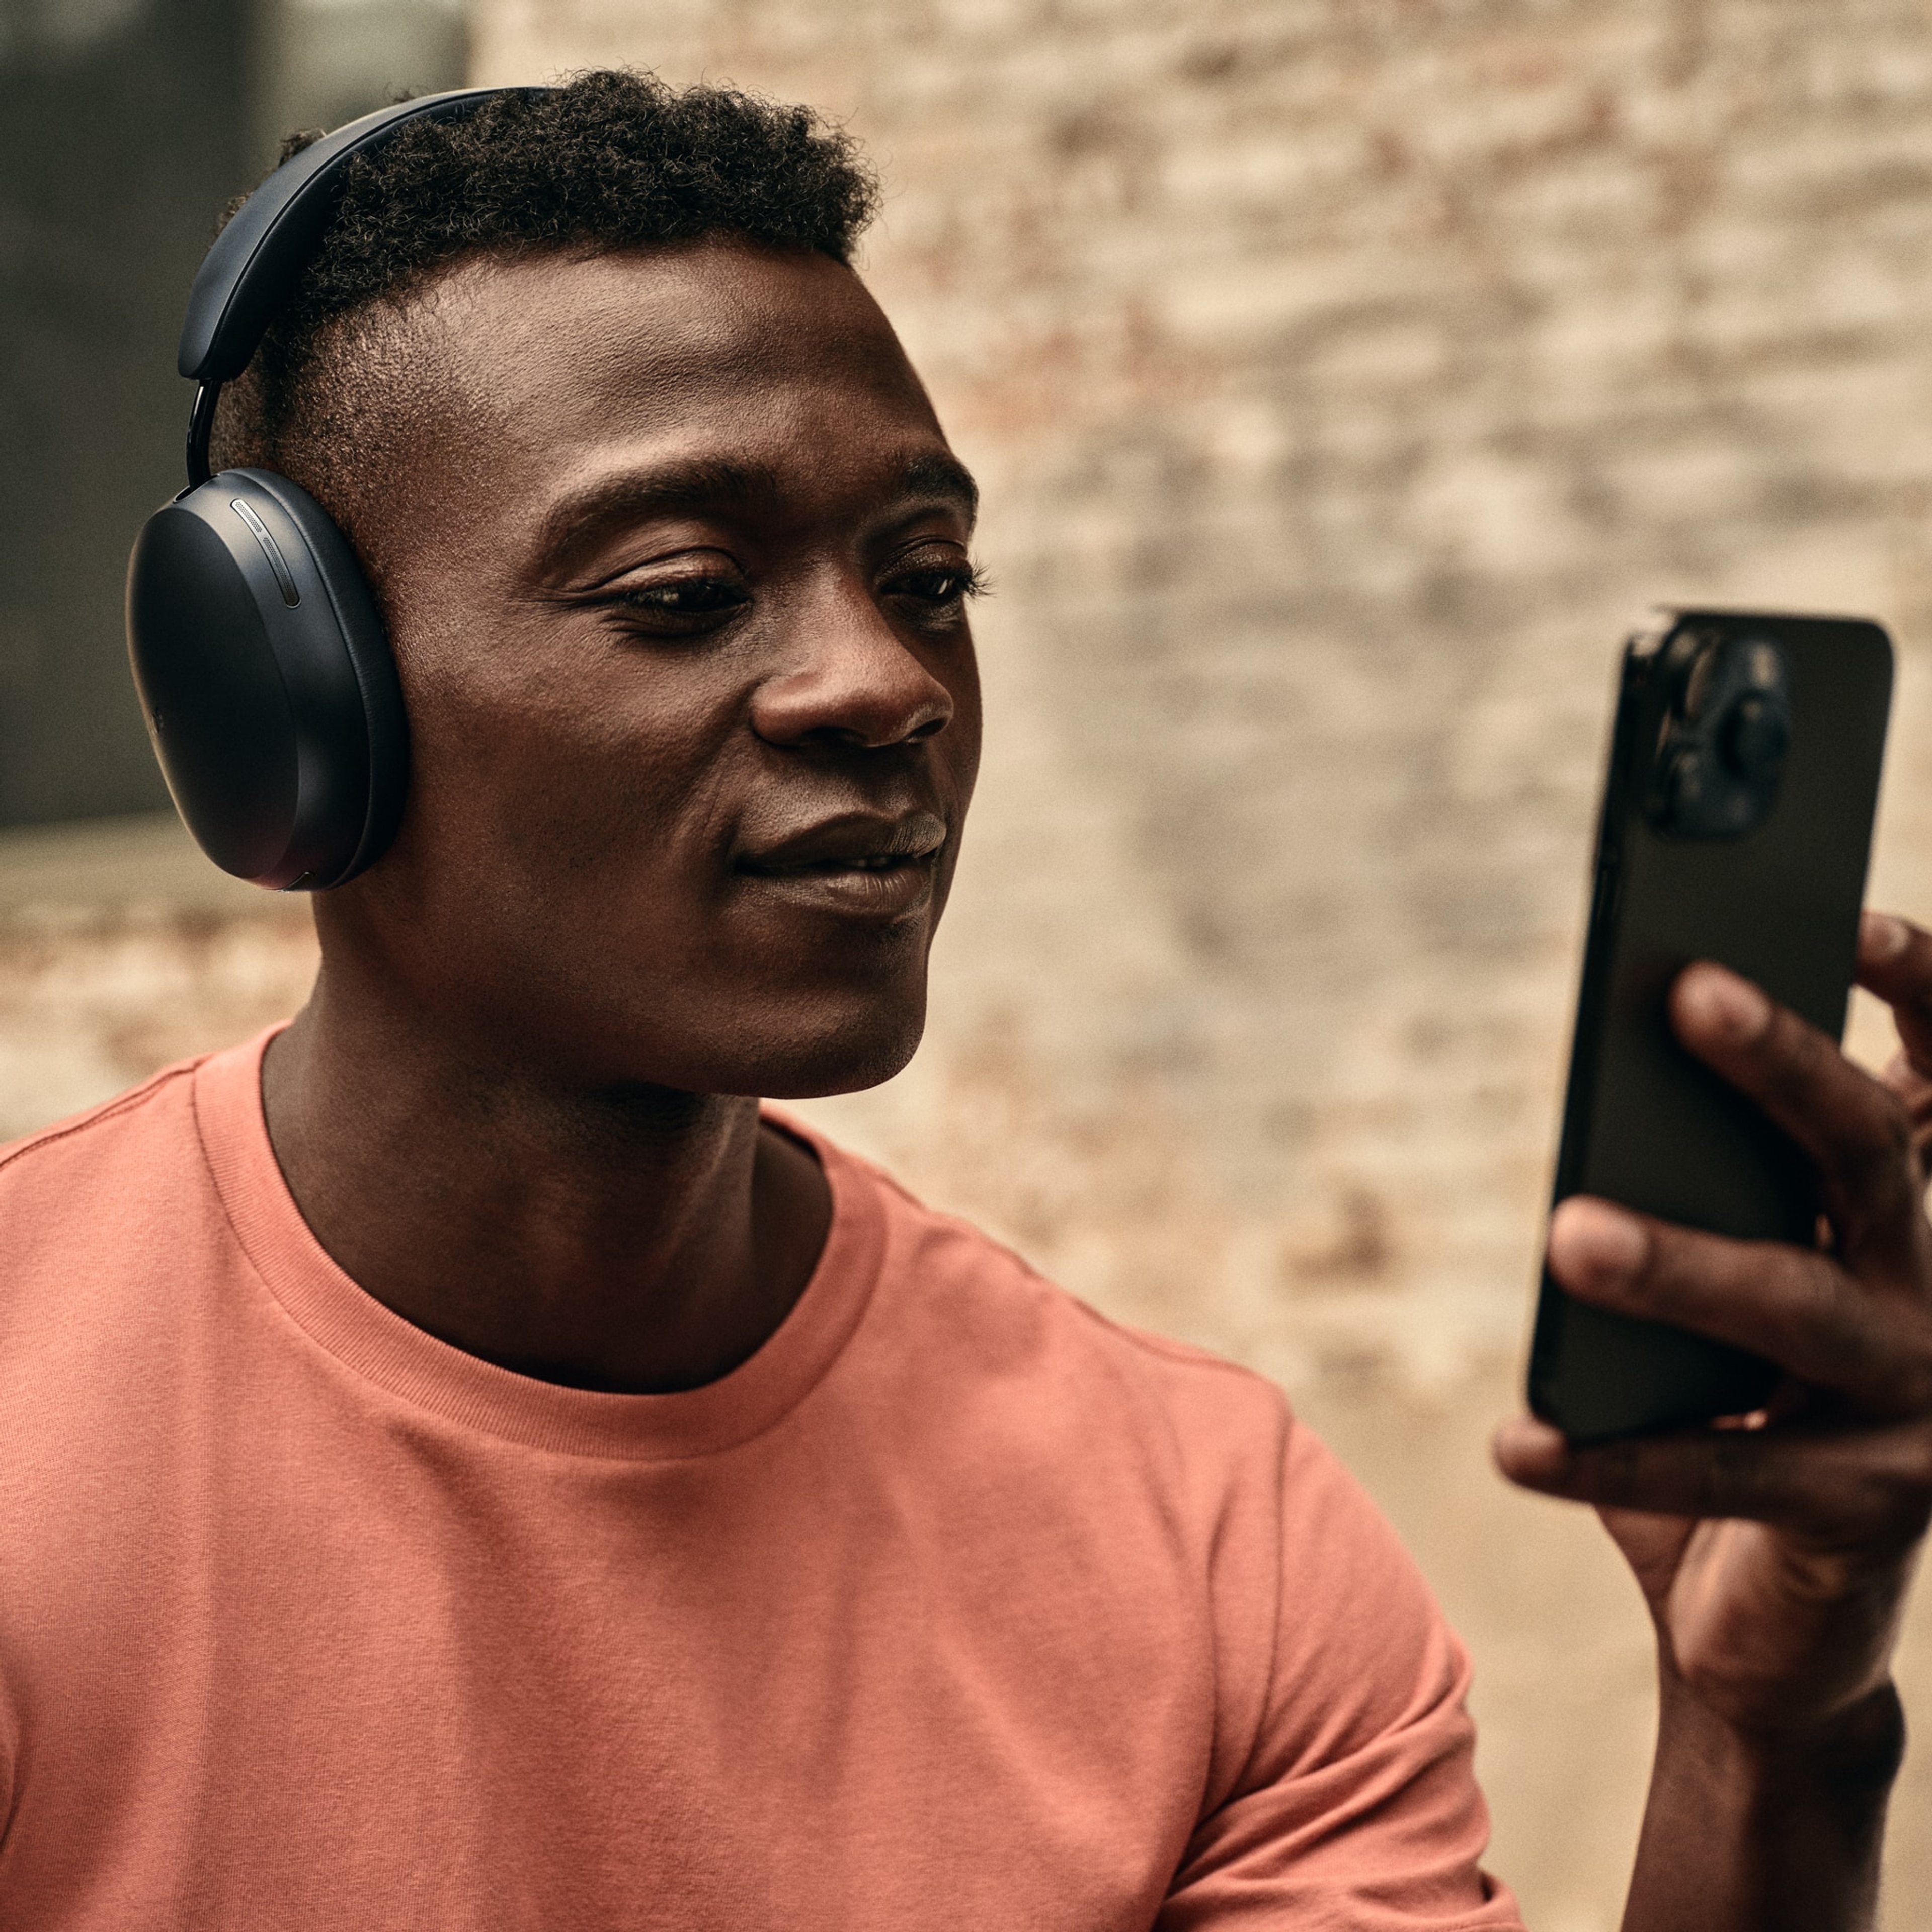 Mannelijke gebruiker met telefoon die luistert met een zwarte Sonos Ace koptelefoon op